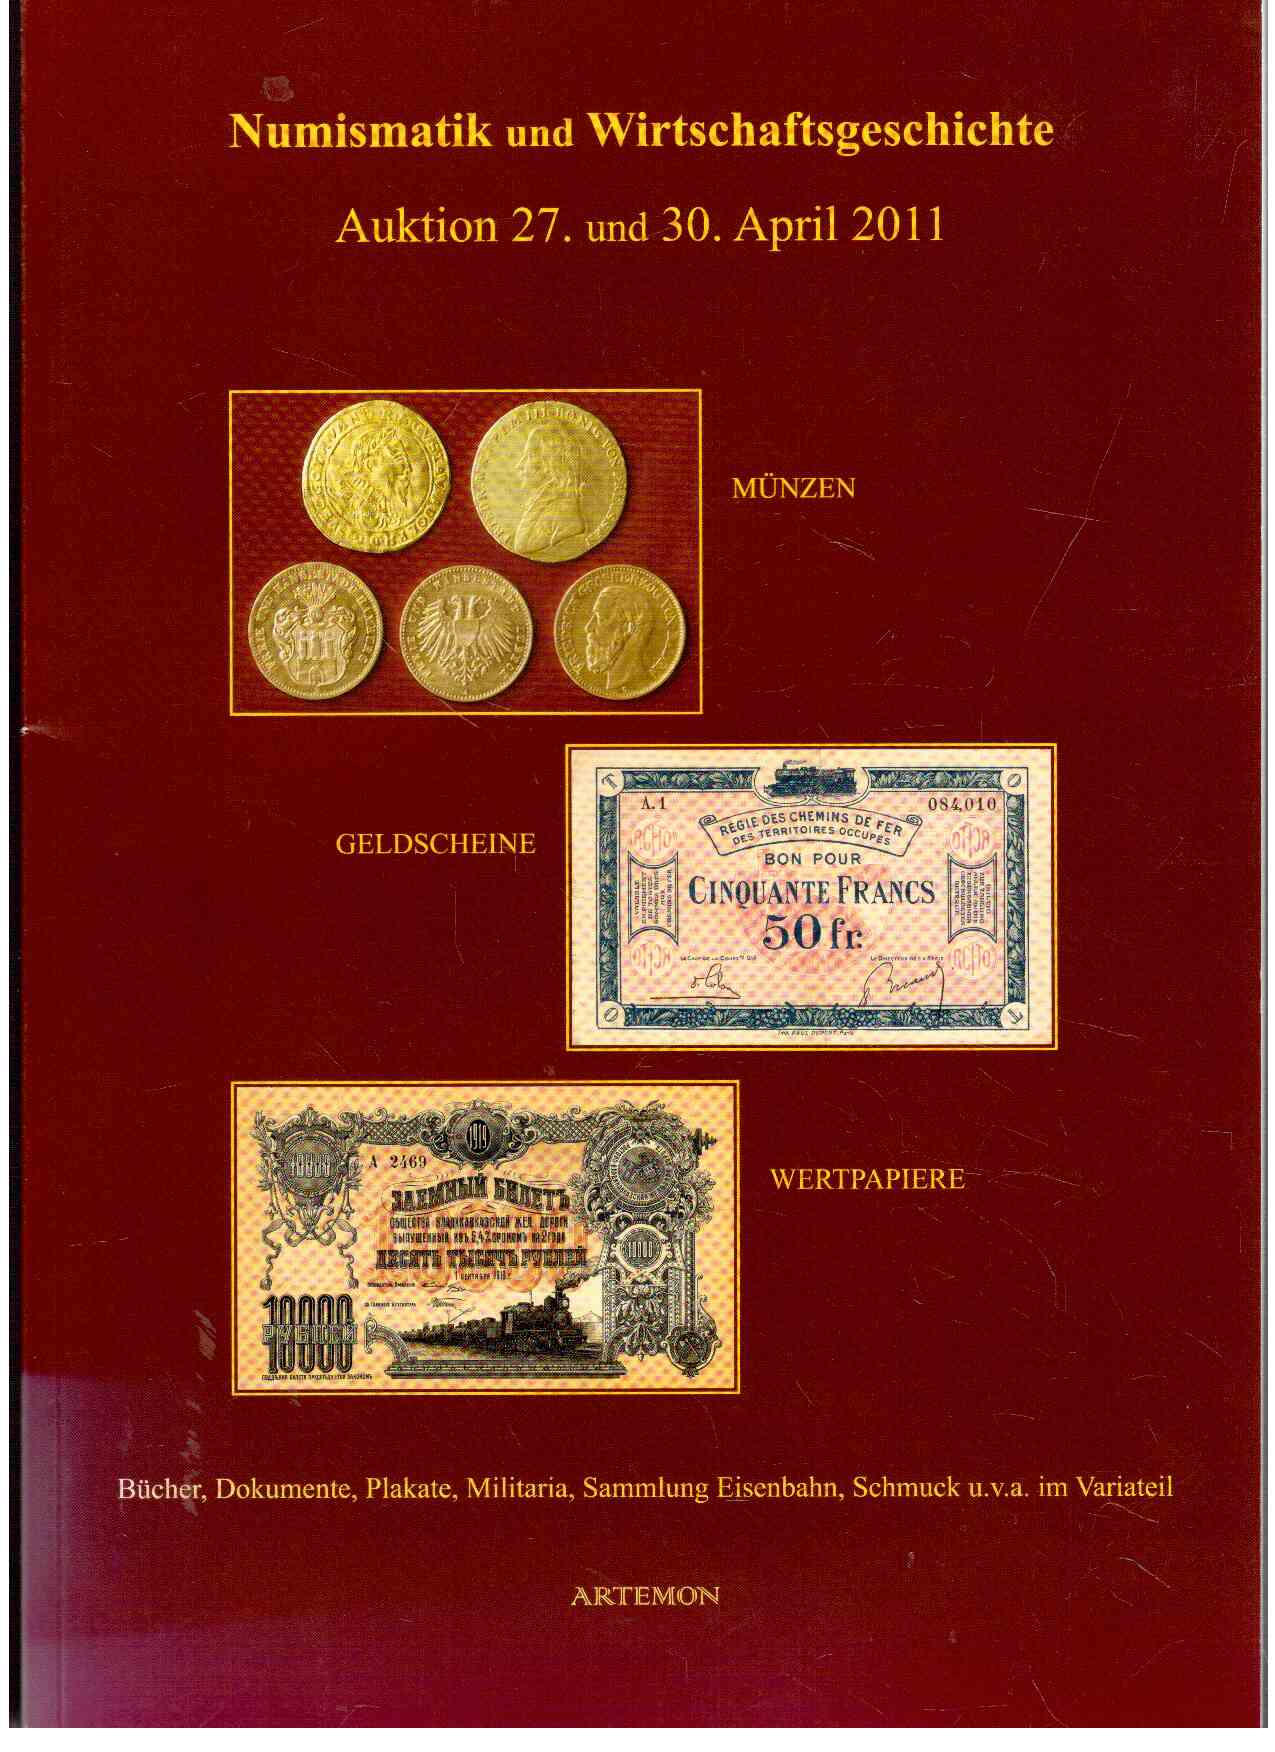 Numismatik und Wirtschafstgeschichte - Auktion 27. und 30. April 2011